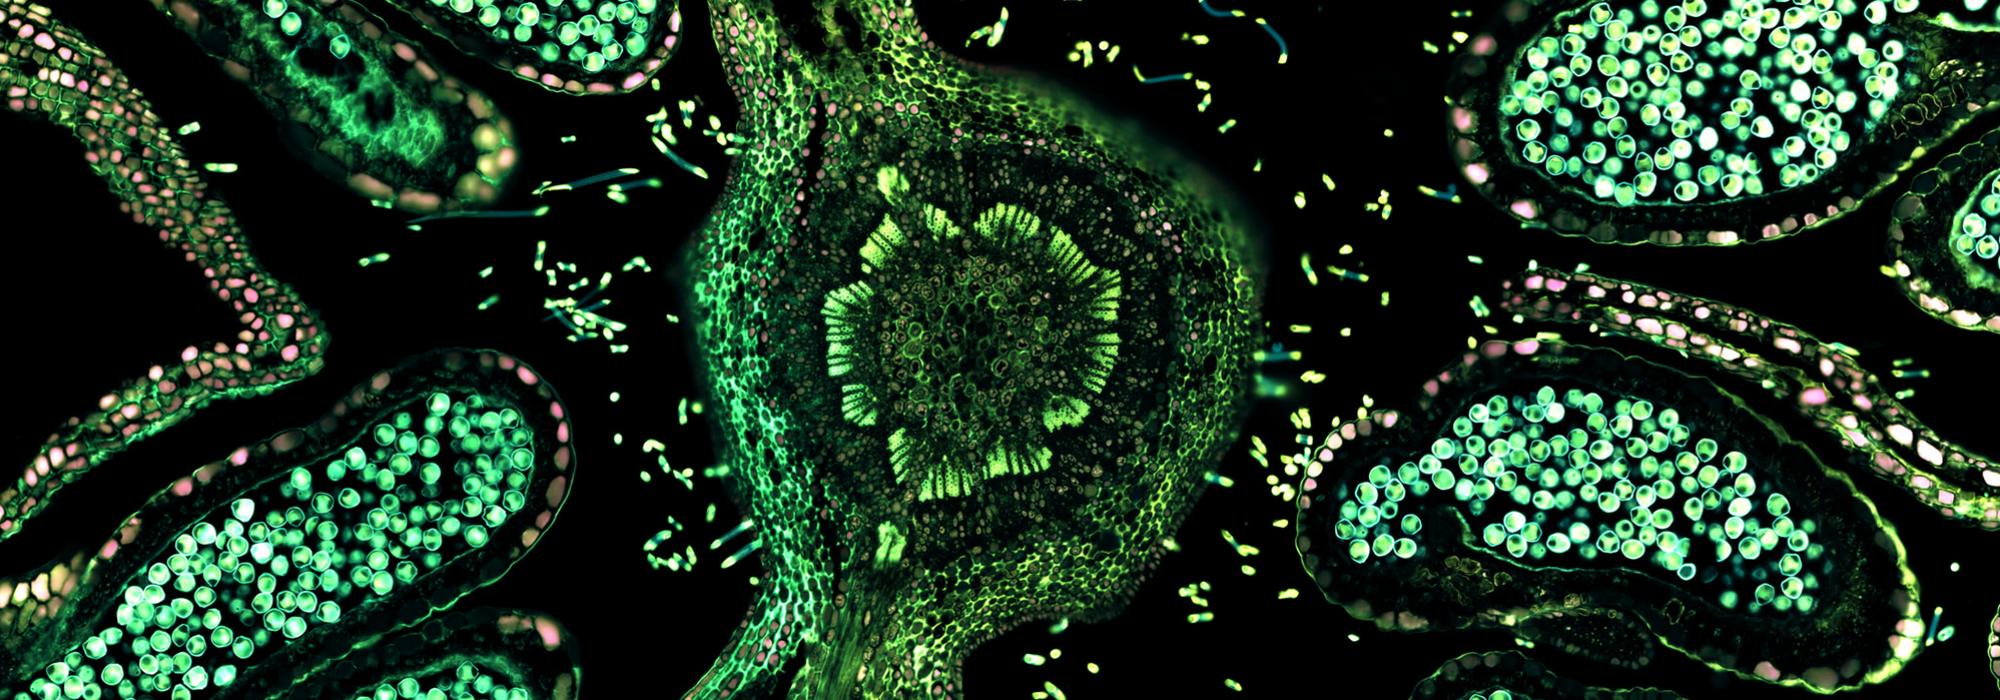 Hazelnut (male flower), overlay of 7 channel autofluorescence microscopy - Image: © ZEISS Microscopy (CC-BY 2.0)